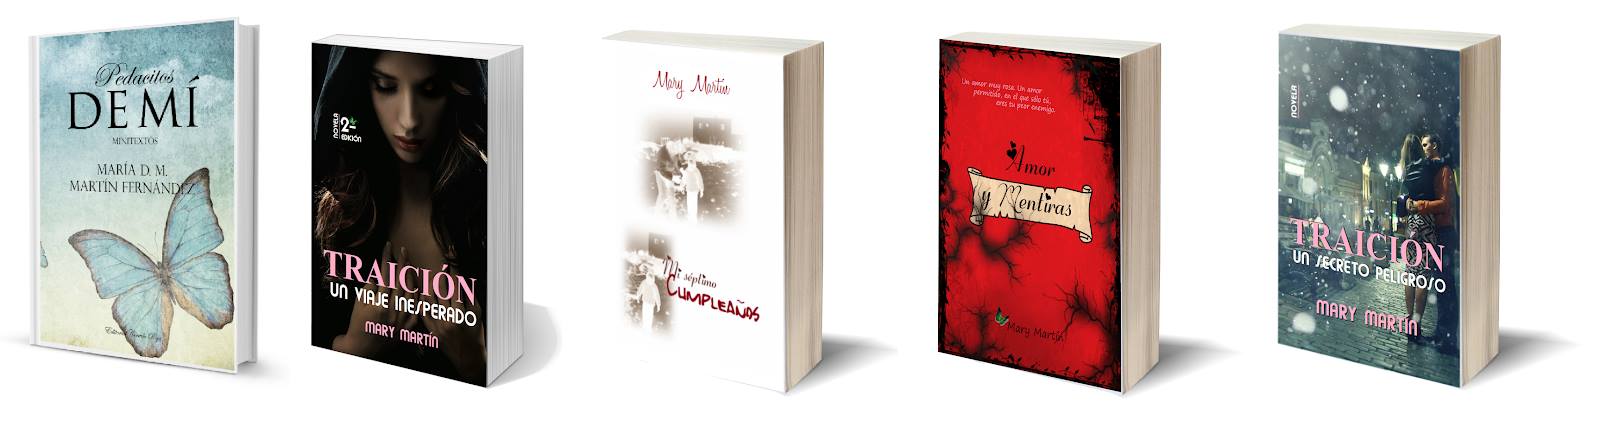 portadas de varios Libros de Mary Martín escritora de novela romántica